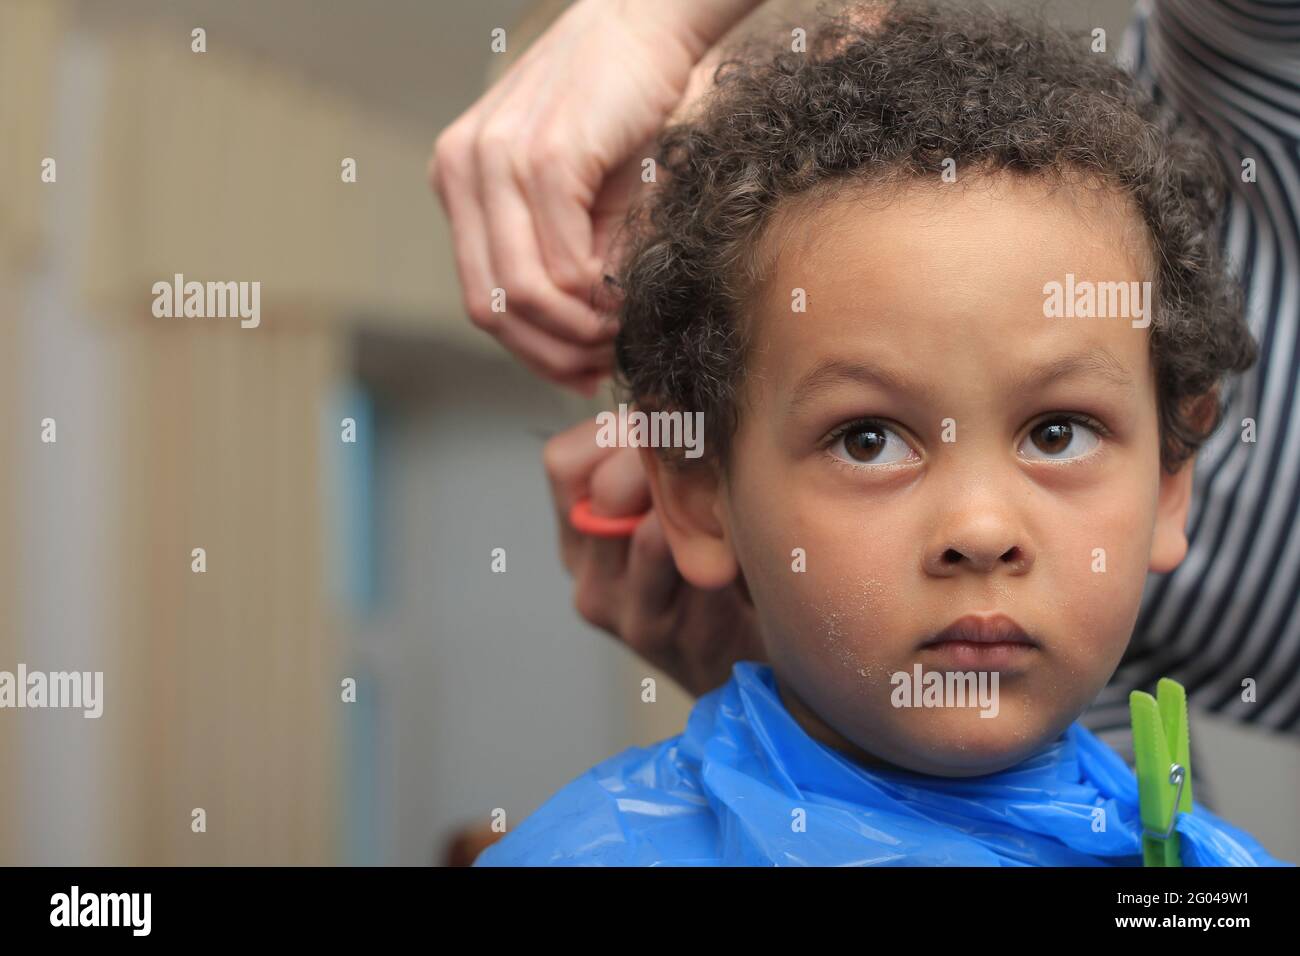 garçon obtenant sa coupe de cheveux dans un salon de coiffure photo de stock Banque D'Images